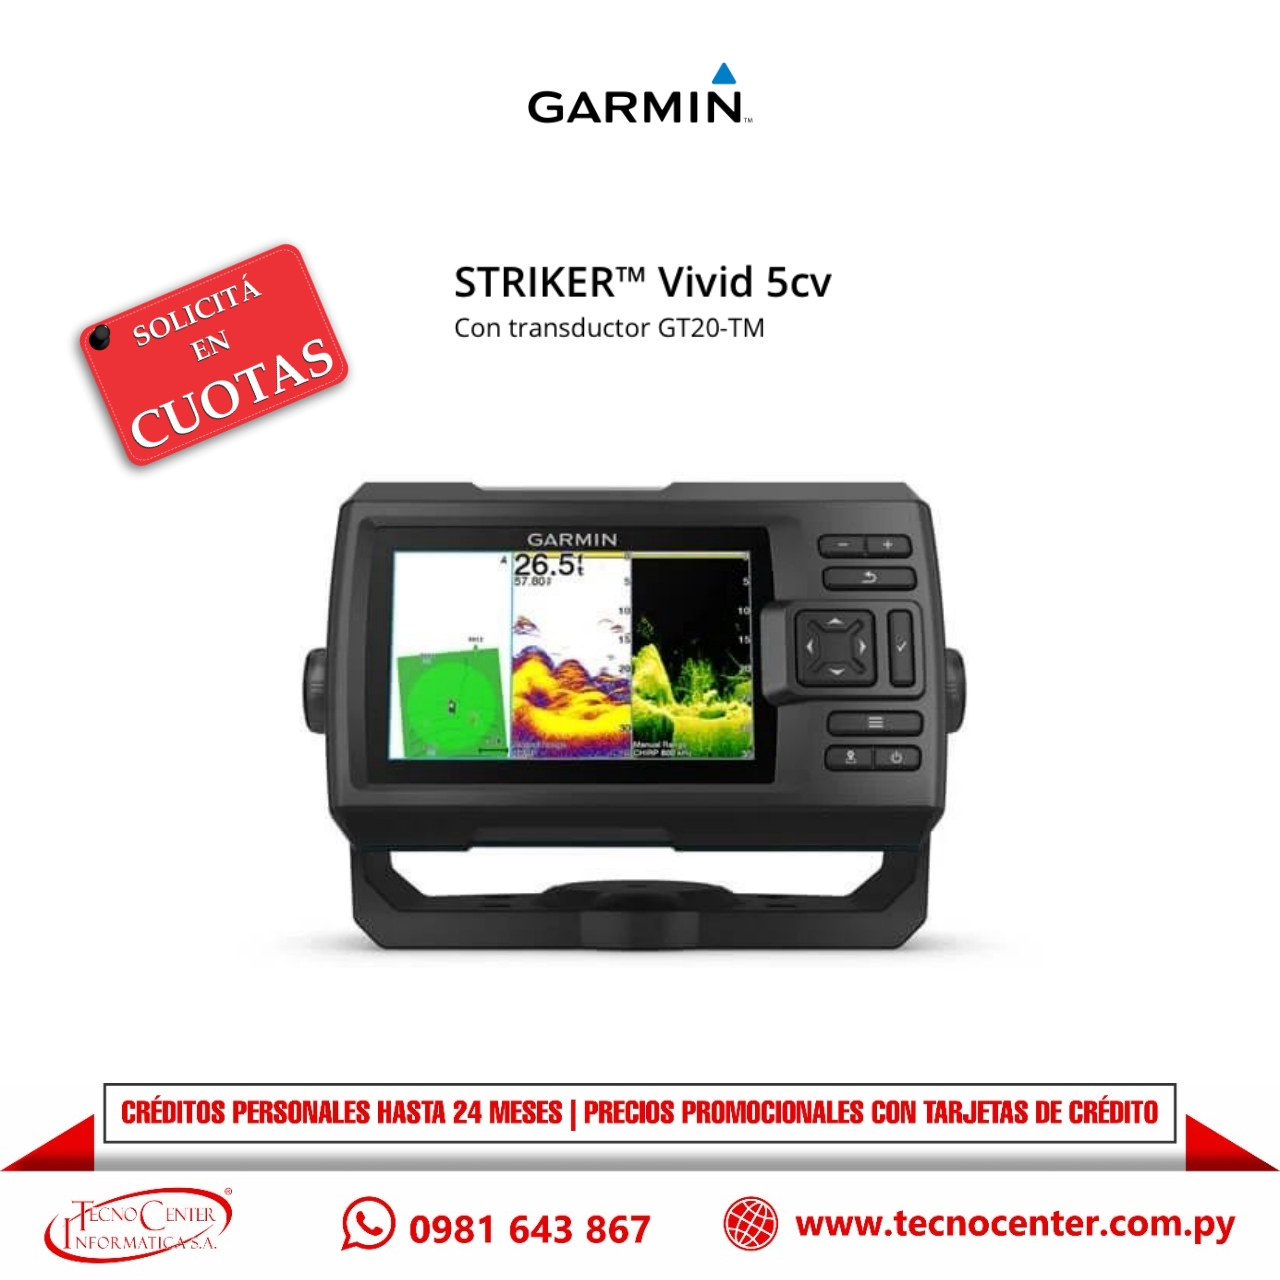 GPS Garmin Striker Vivid 5cv Con Transductor GT20-